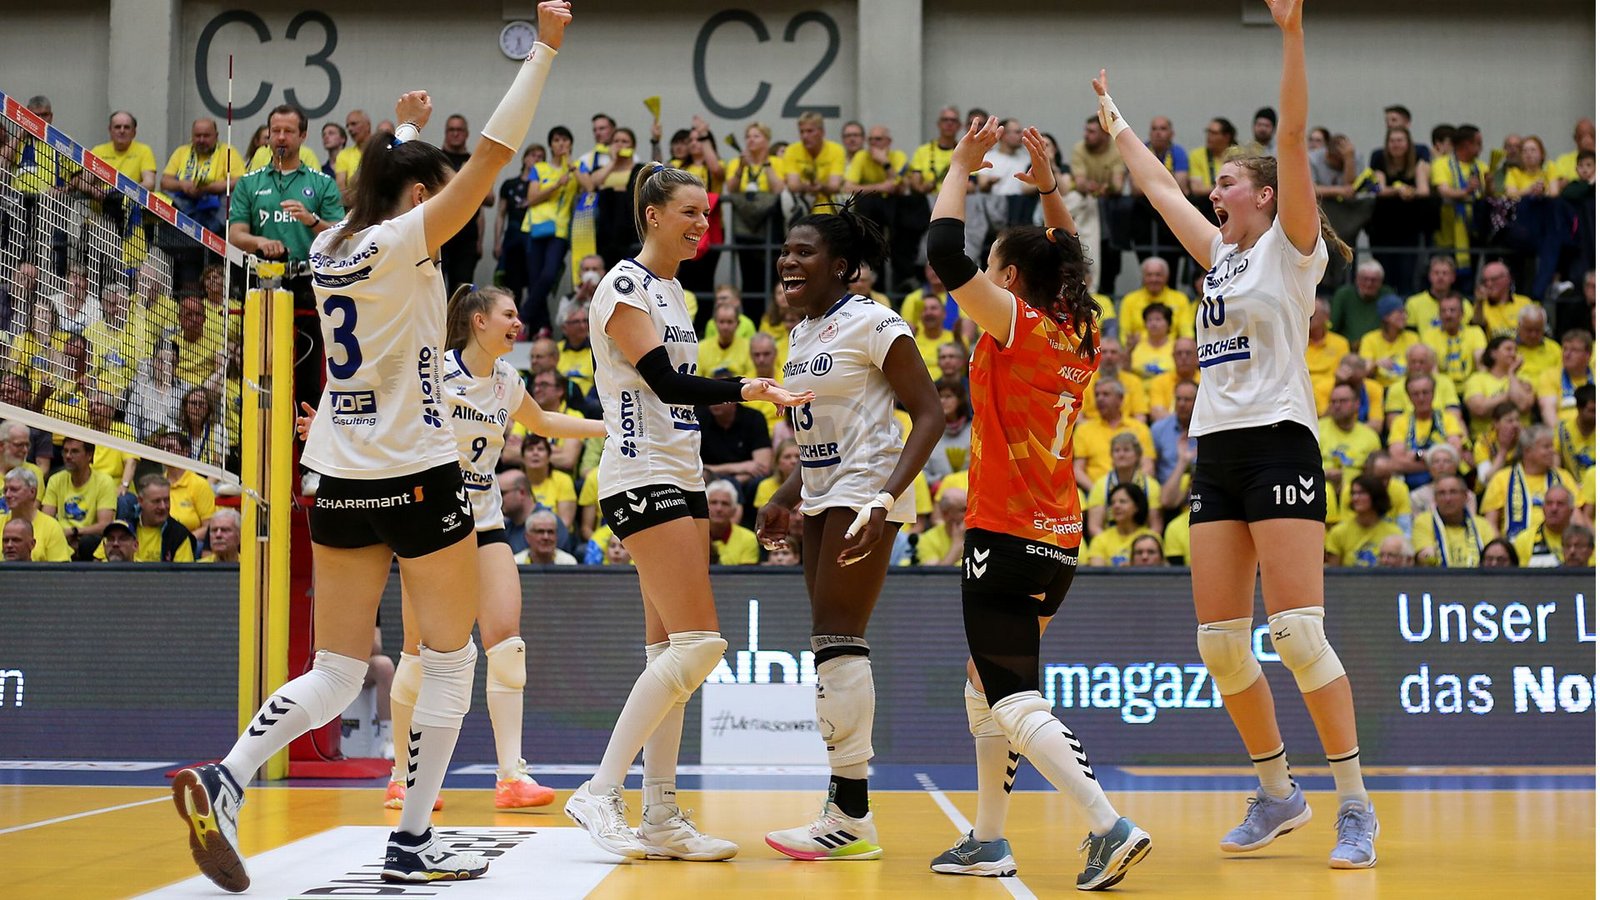 Die Volleyballerinnen des MTV Stuttgart haben zum dritten Mal in Folge den deutschen Meistertitel gewonnen.Foto: Pressefoto Baumann/Cathrin MŸller